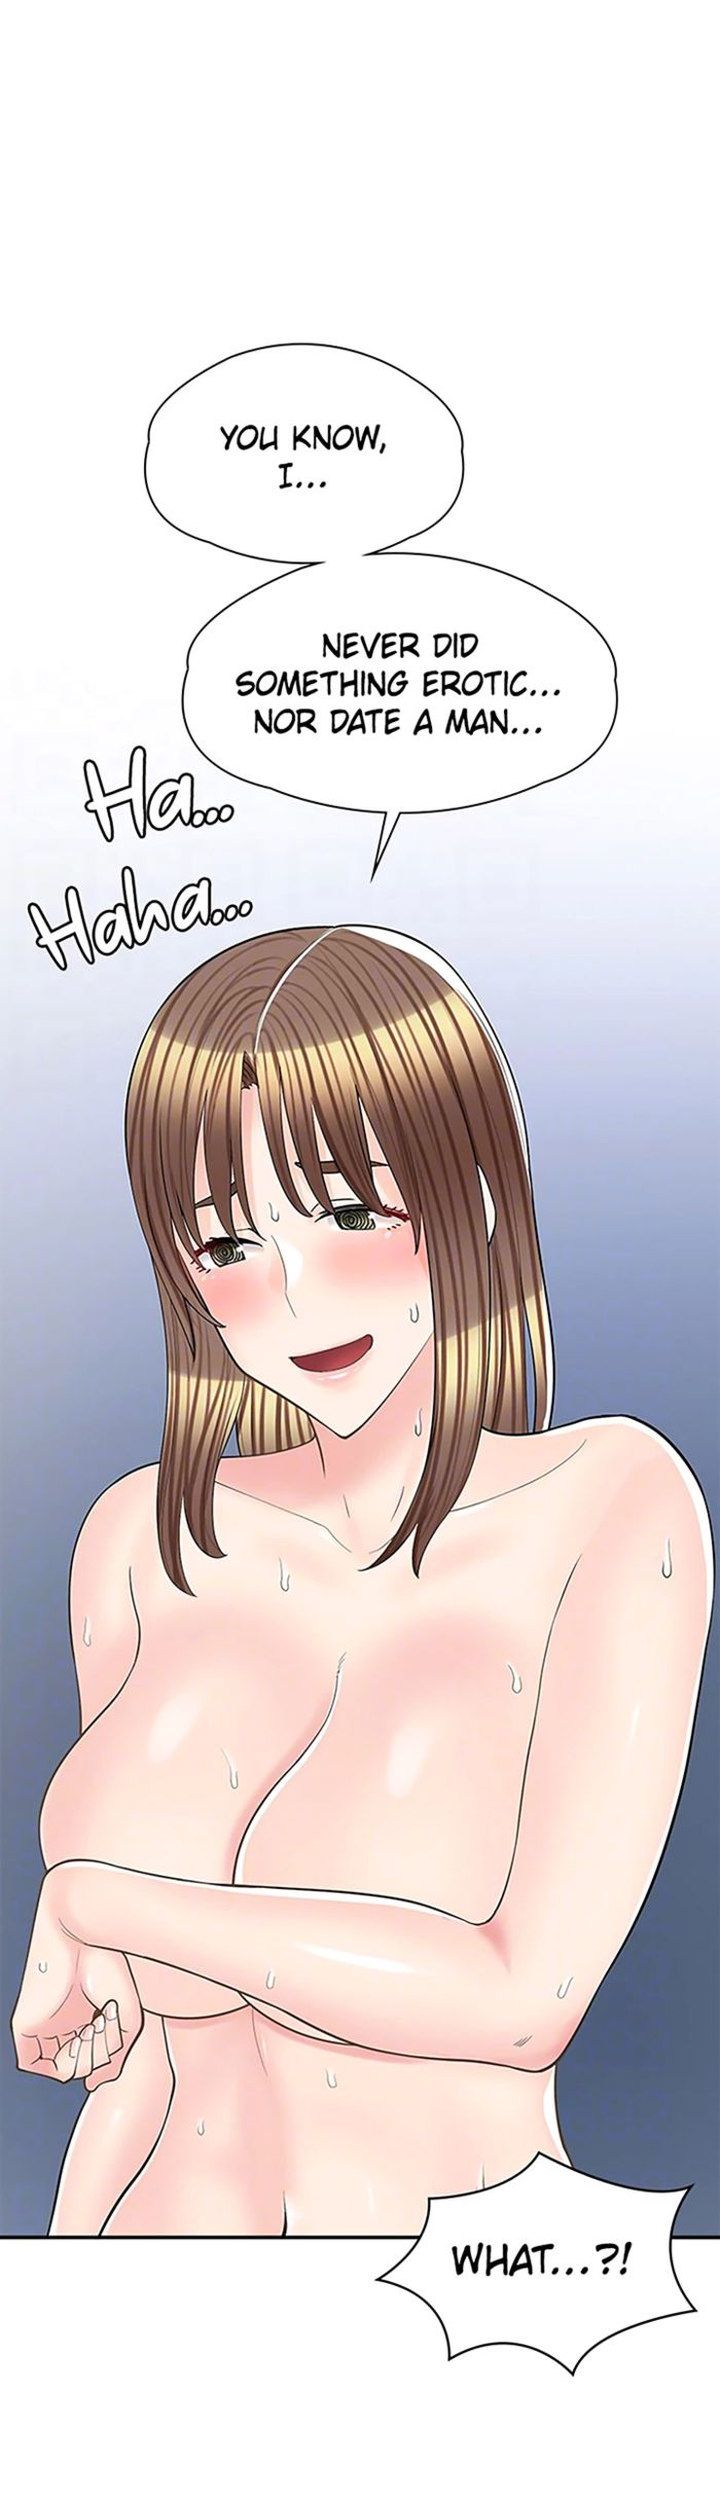 The image Erotic Manga Café Girls - Chapter 15 - 3306c0d4756606ef46 - ManhwaManga.io